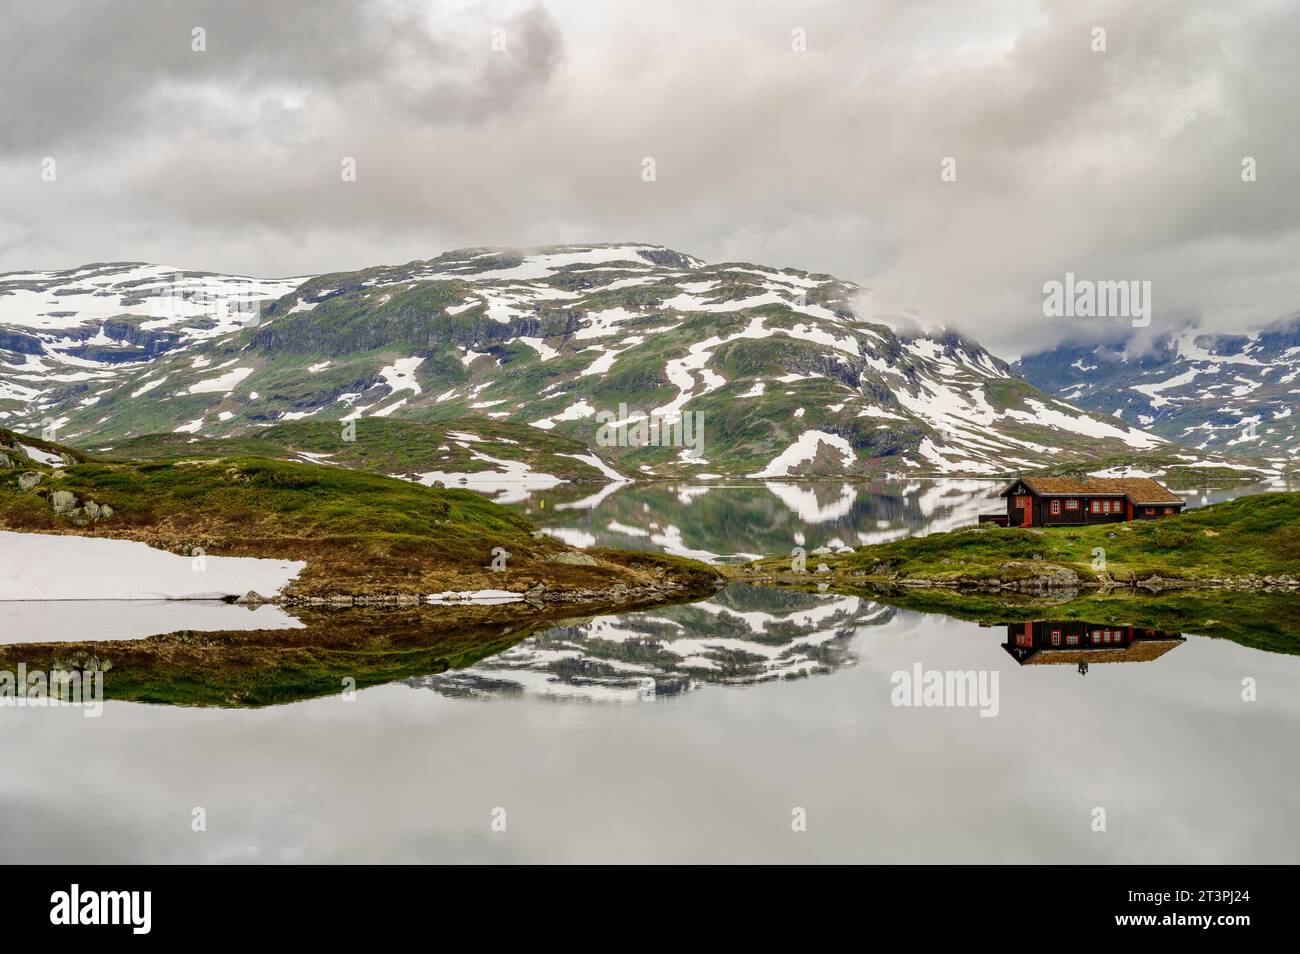 Berge mit Schnee und eine einsame Hütte, die sich in einem ruhigen See auf Haukelifjell in Norwegen spiegelt Stockfoto